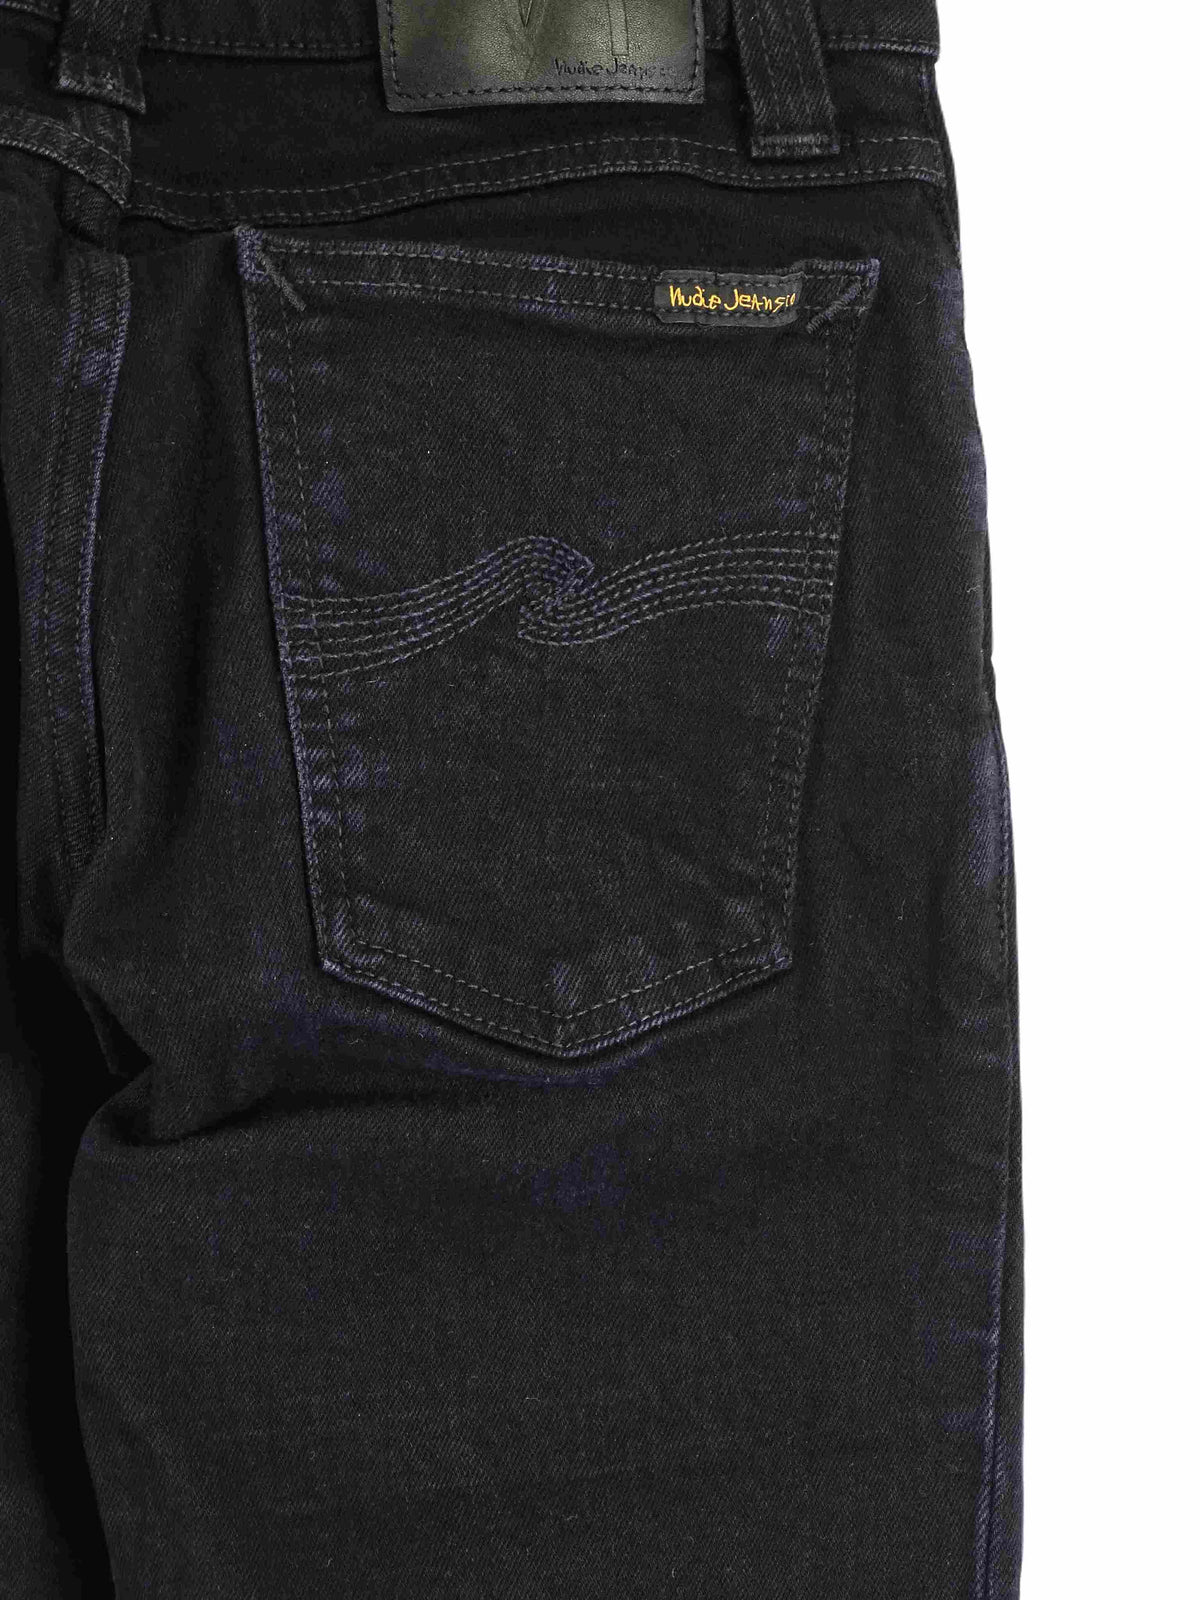 Nudie Black Jeans 10